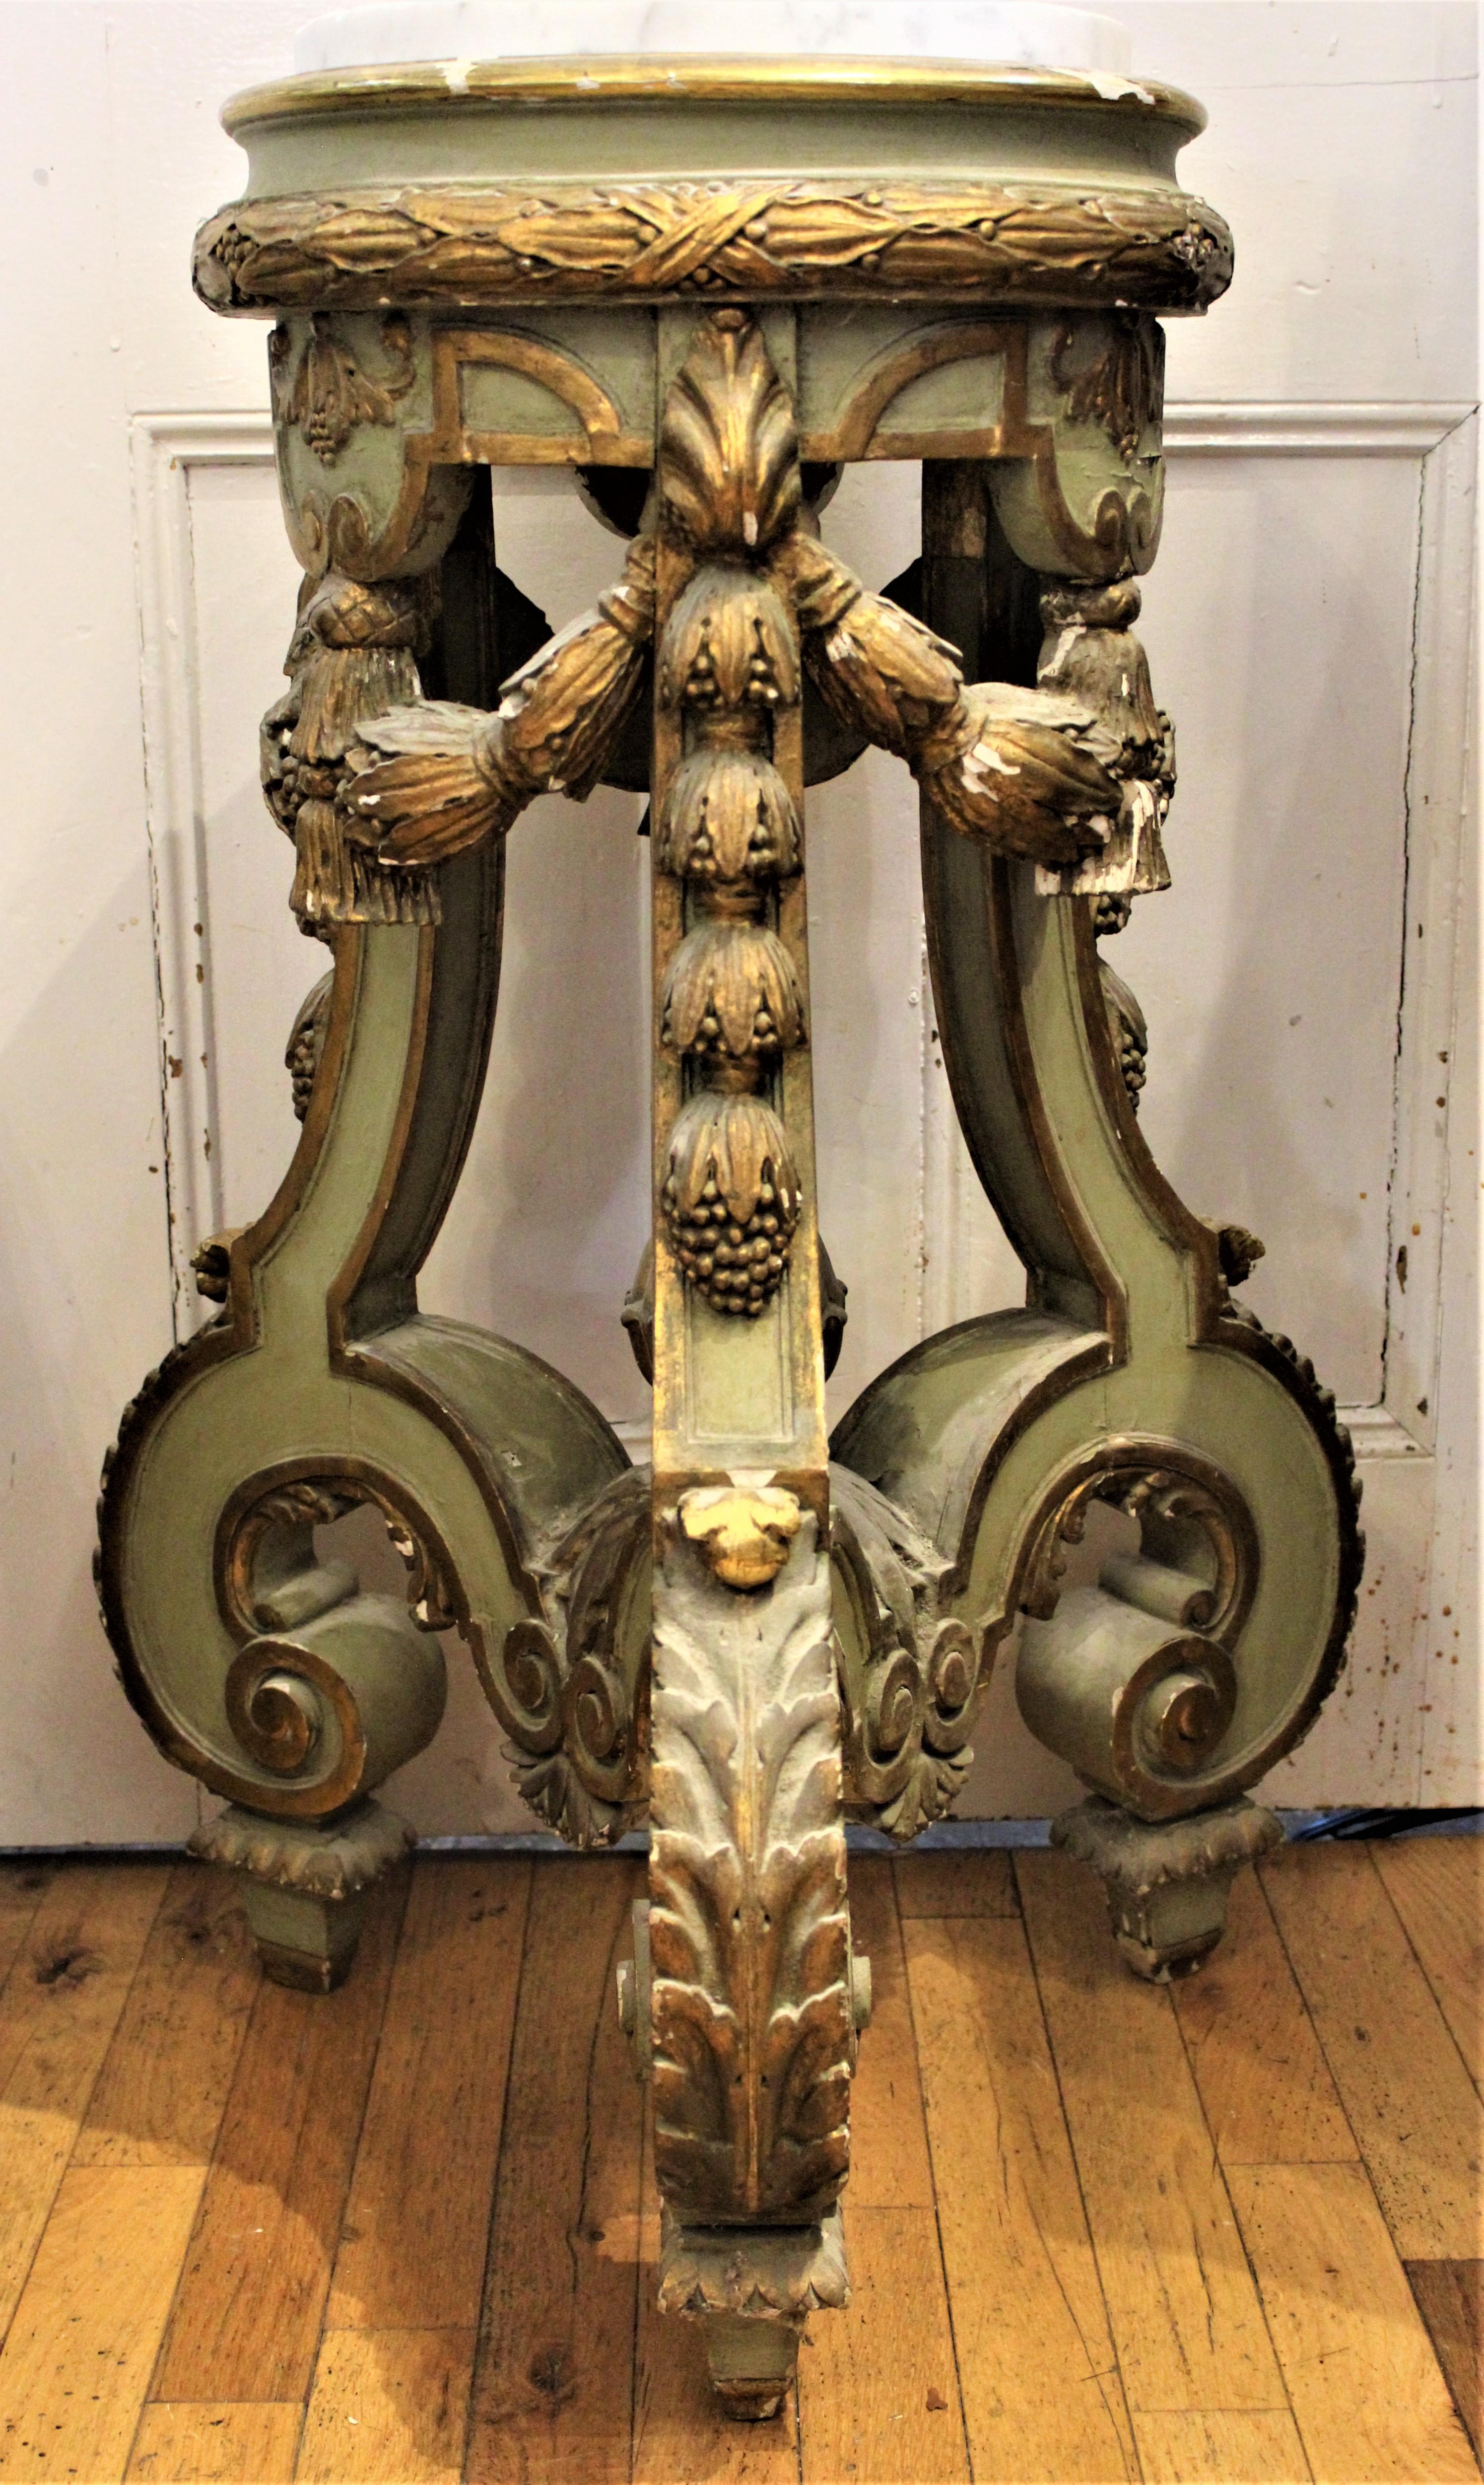 De style rococo et datant du milieu du XIXe siècle, cet important piédestal en bois sculpté et peint à la main, recouvert de gesso, présente un décor à motif de boules descendant en cascade le long de chacun des épais pieds en forme de serpentin et